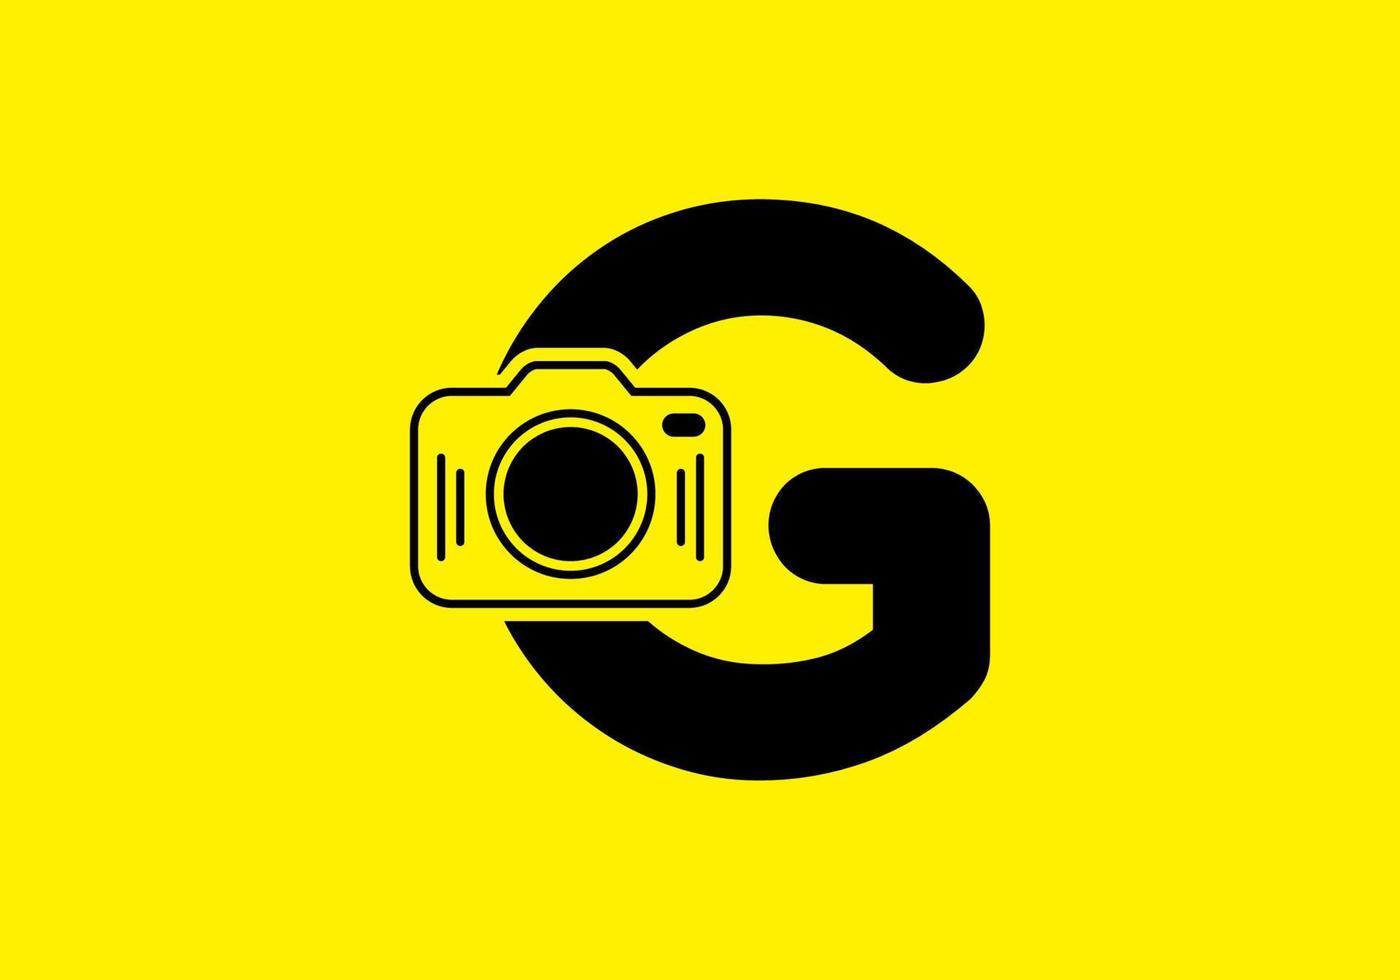 amarelo preto da letra inicial g com câmera vetor